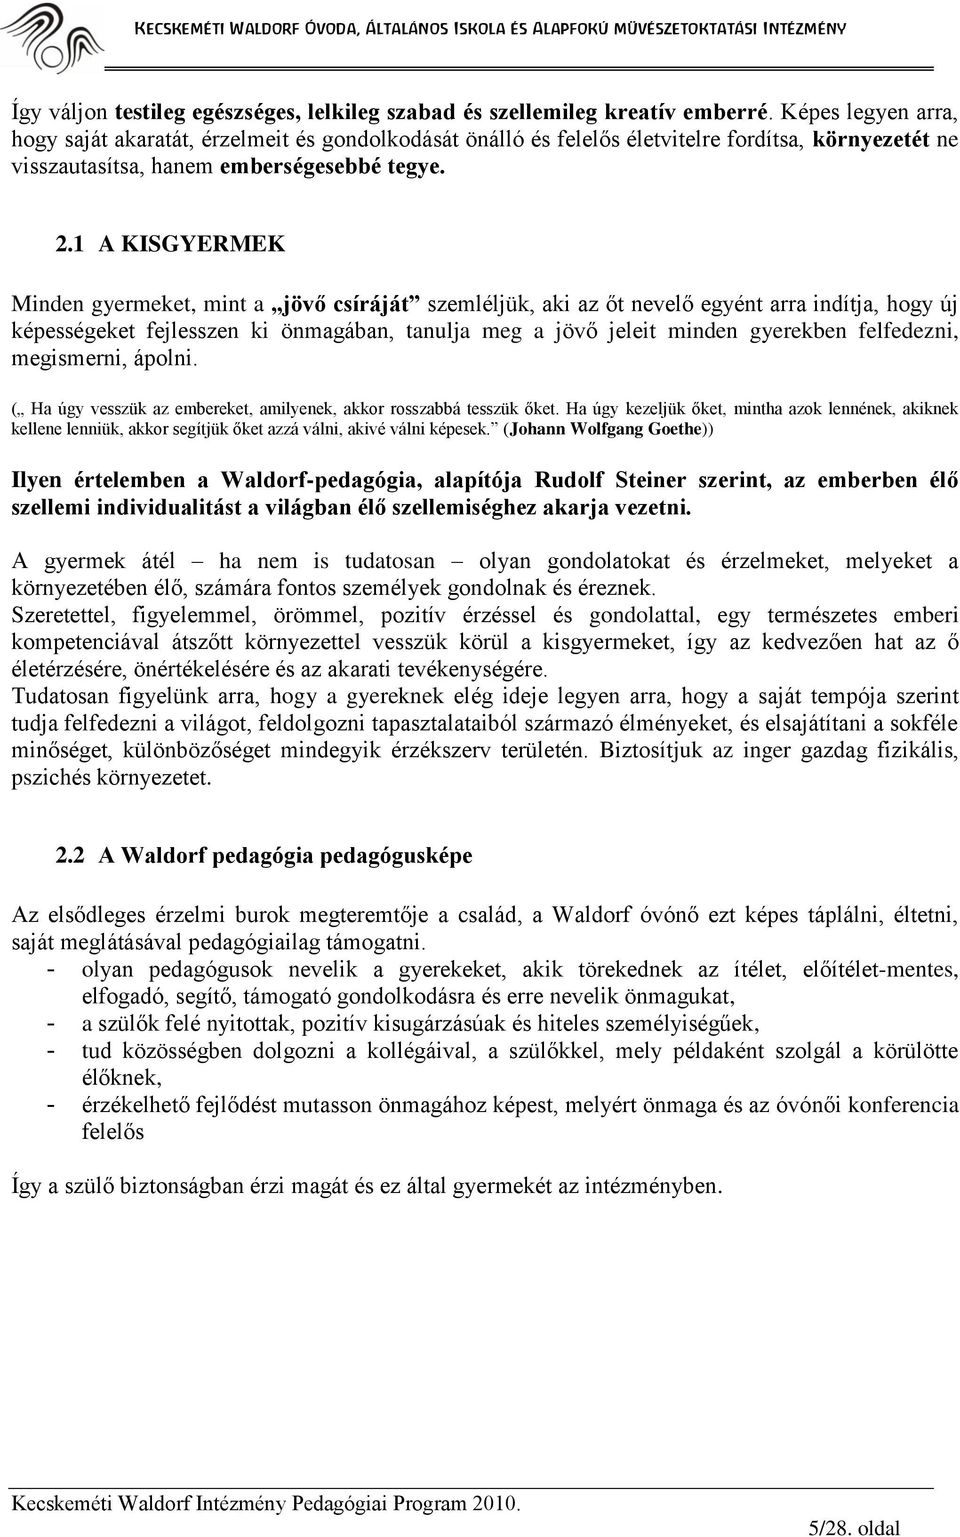 A Mihály Kertje Waldorf Óvoda. Pedagógiai Programja - PDF Ingyenes letöltés